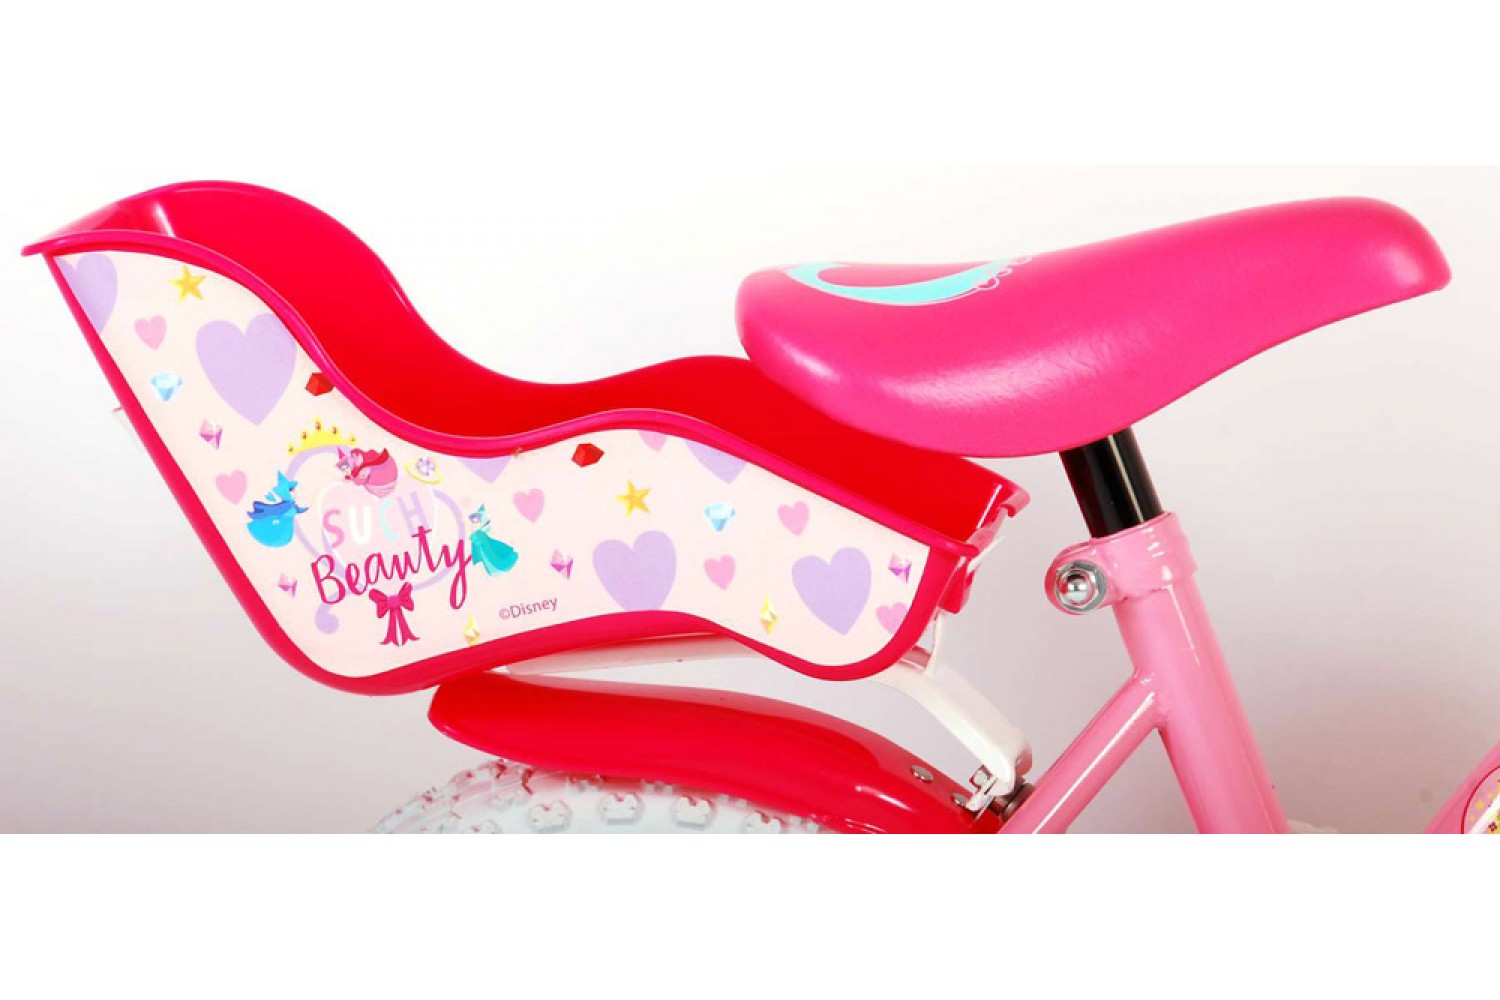 Disney Princess Kinderfiets 12 inch Meisjes Roze